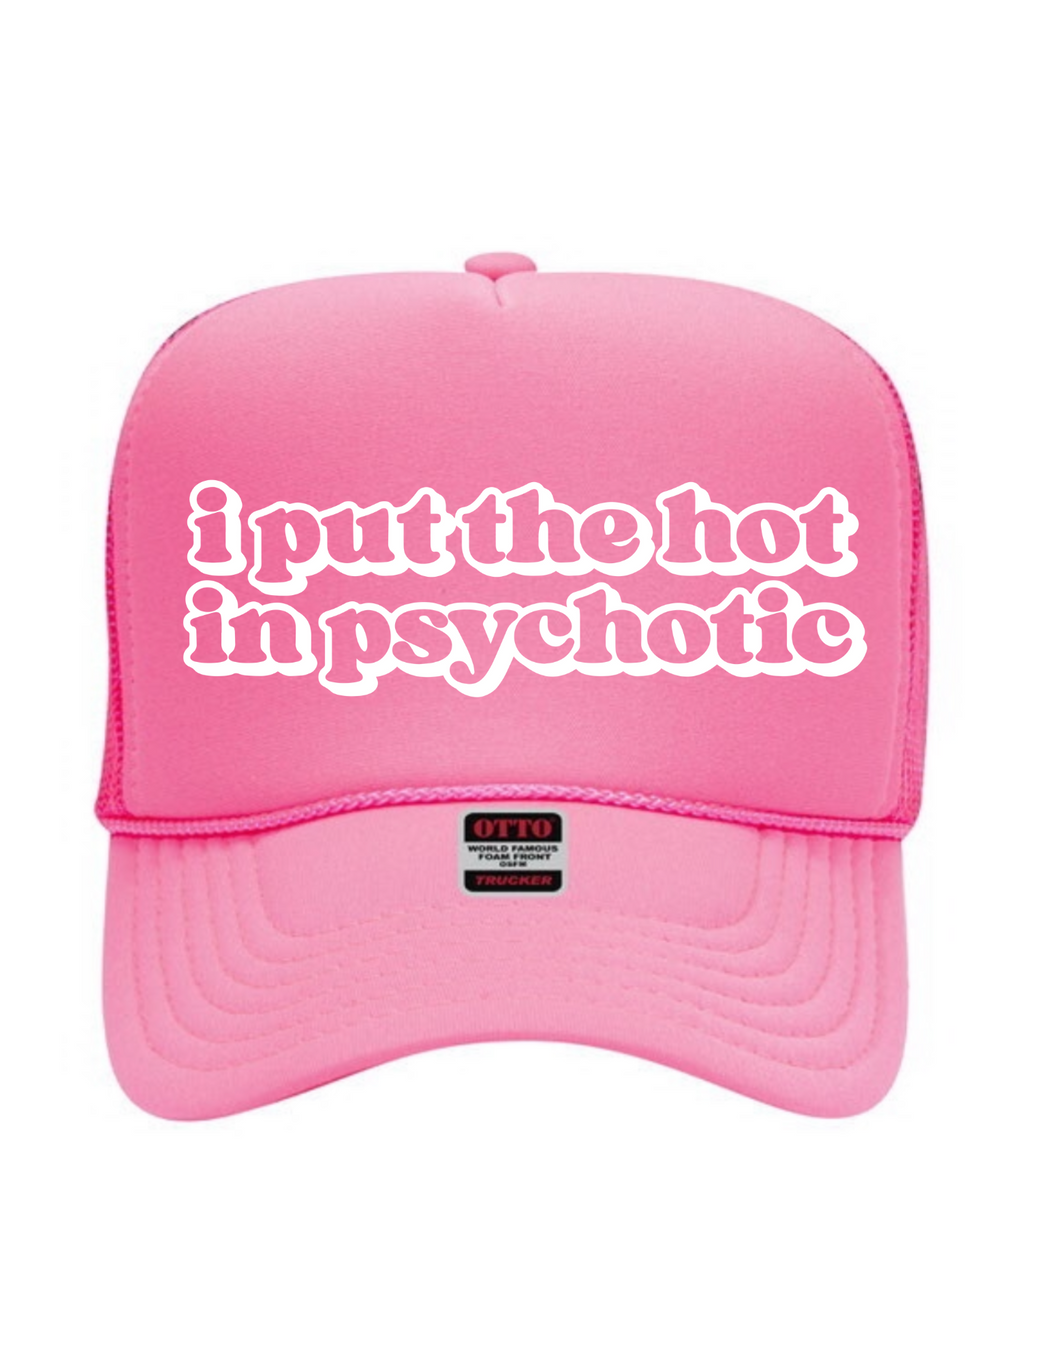 Hot in Psychotic (Pink) - Trucker Hat